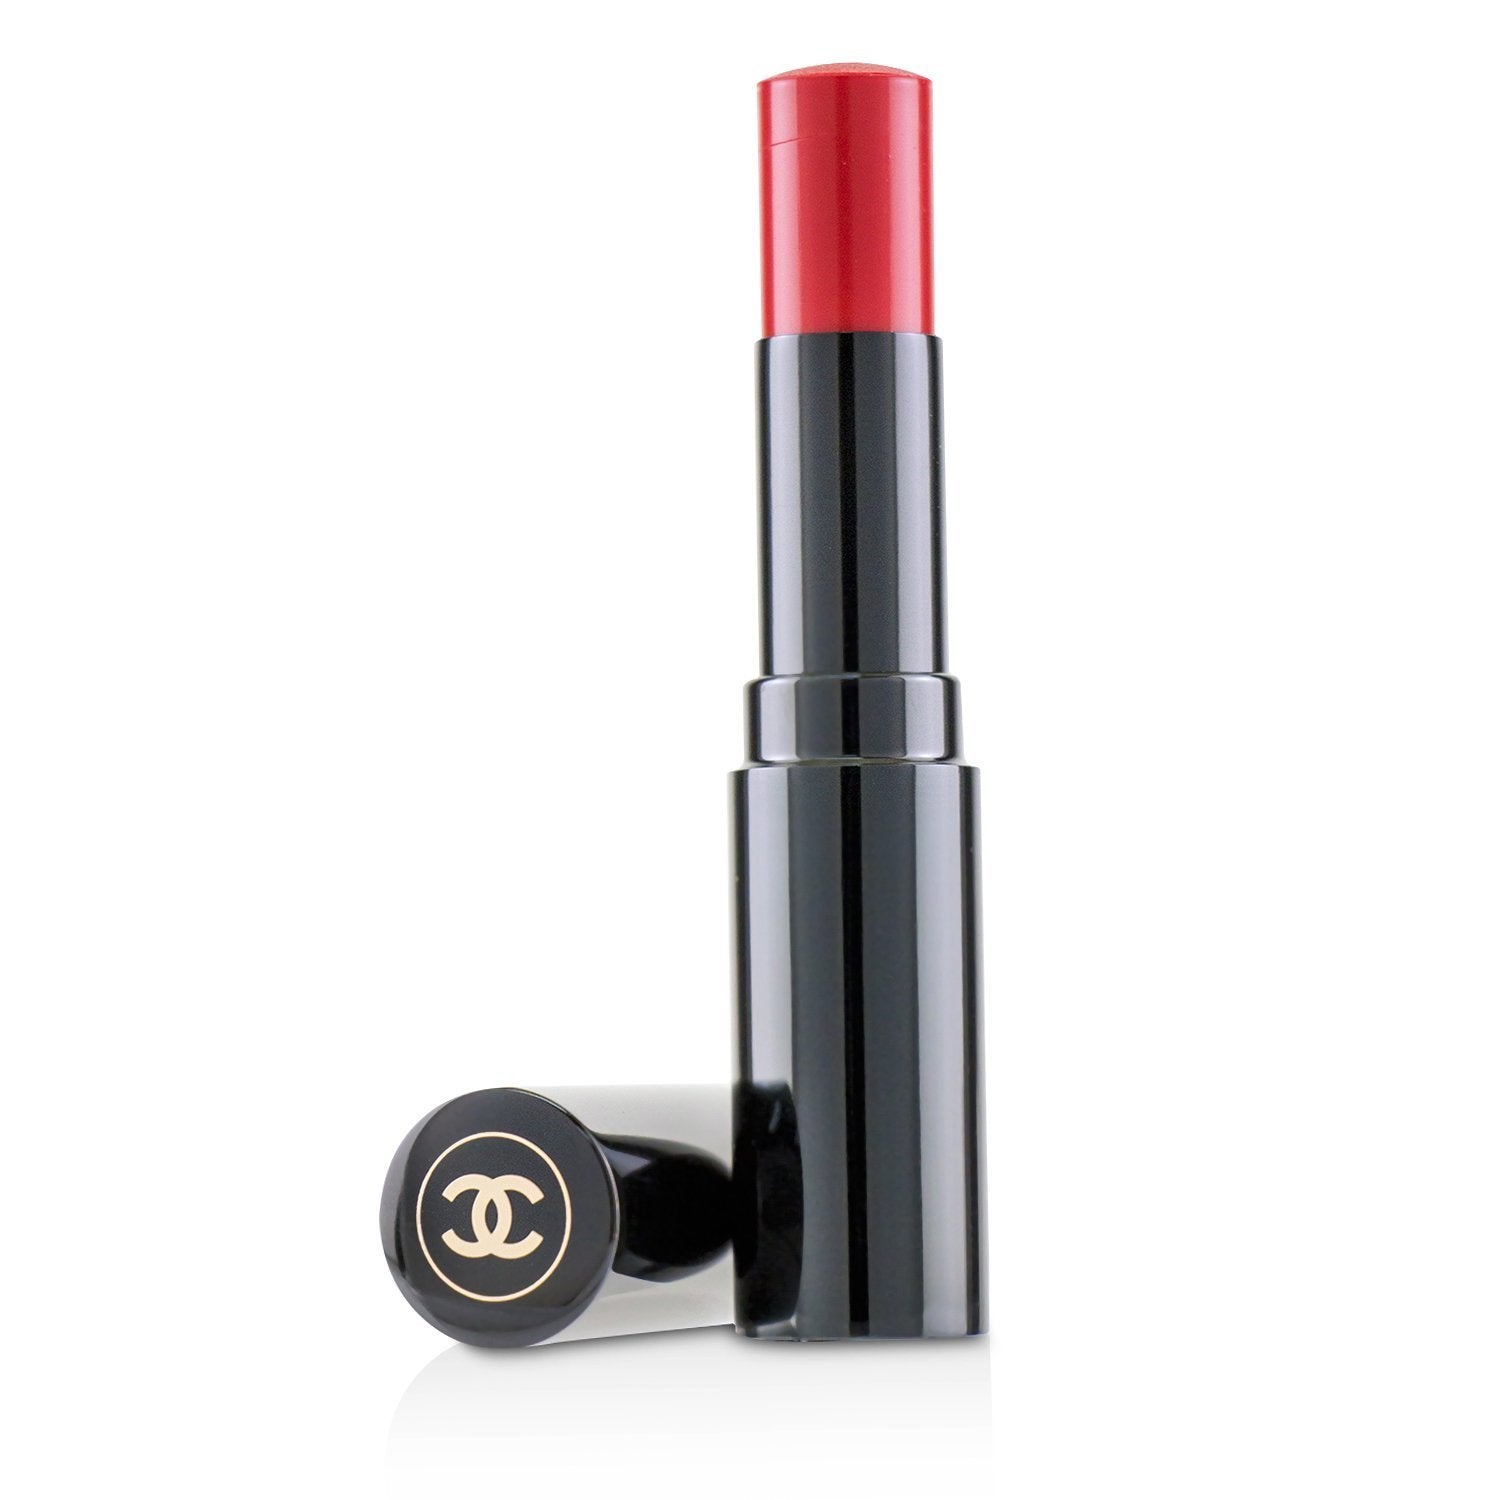 Chanel Les Beiges Healthy Glow Lip Balm - Medium 3g/0.1oz – Fresh